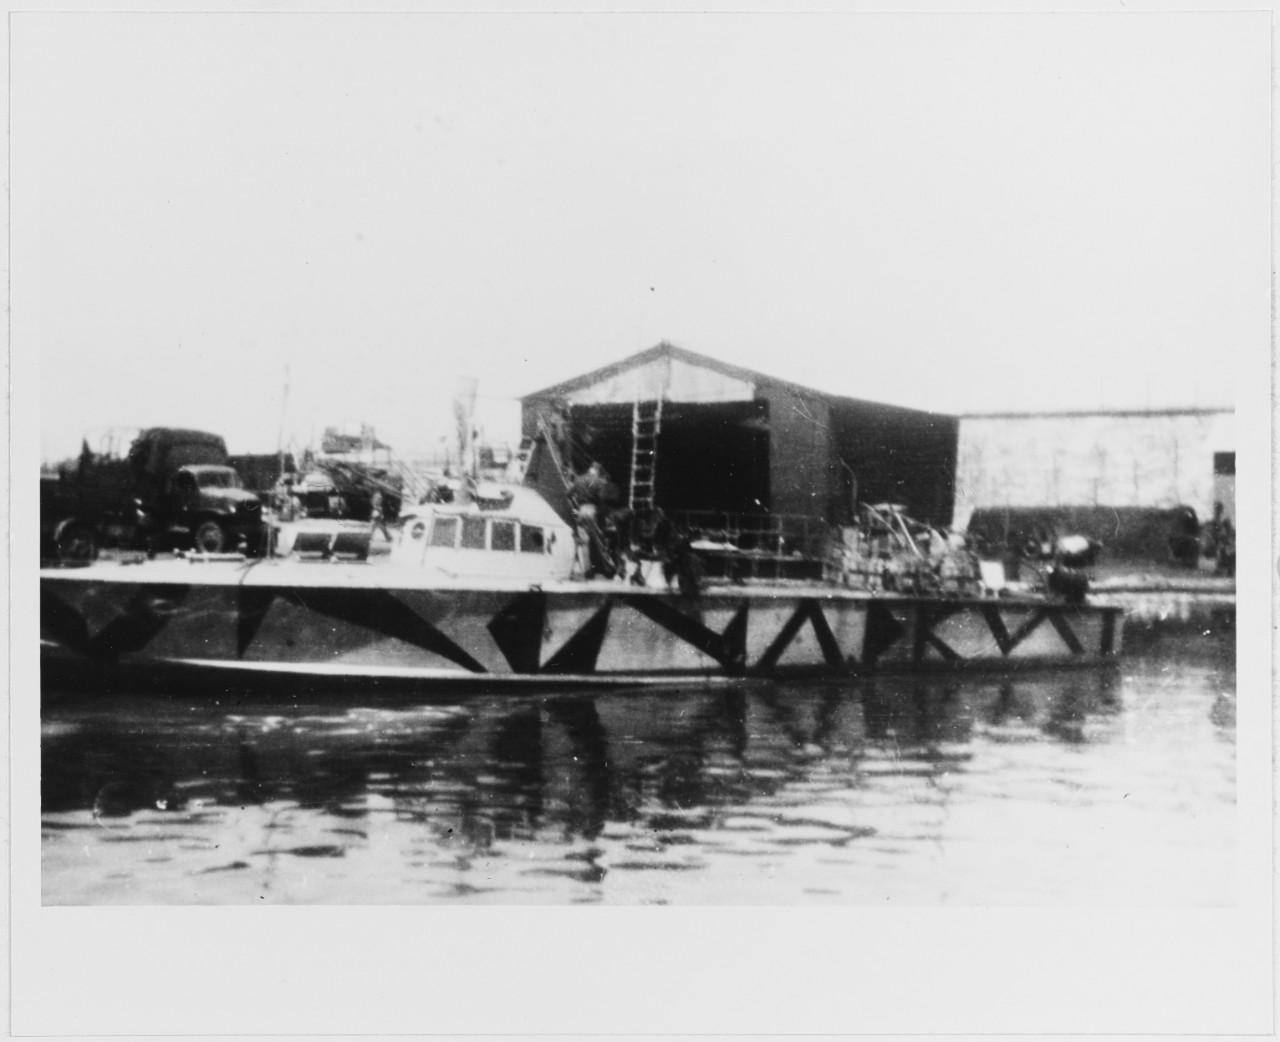 MAS 562 Italian Motor Torpedo Boat